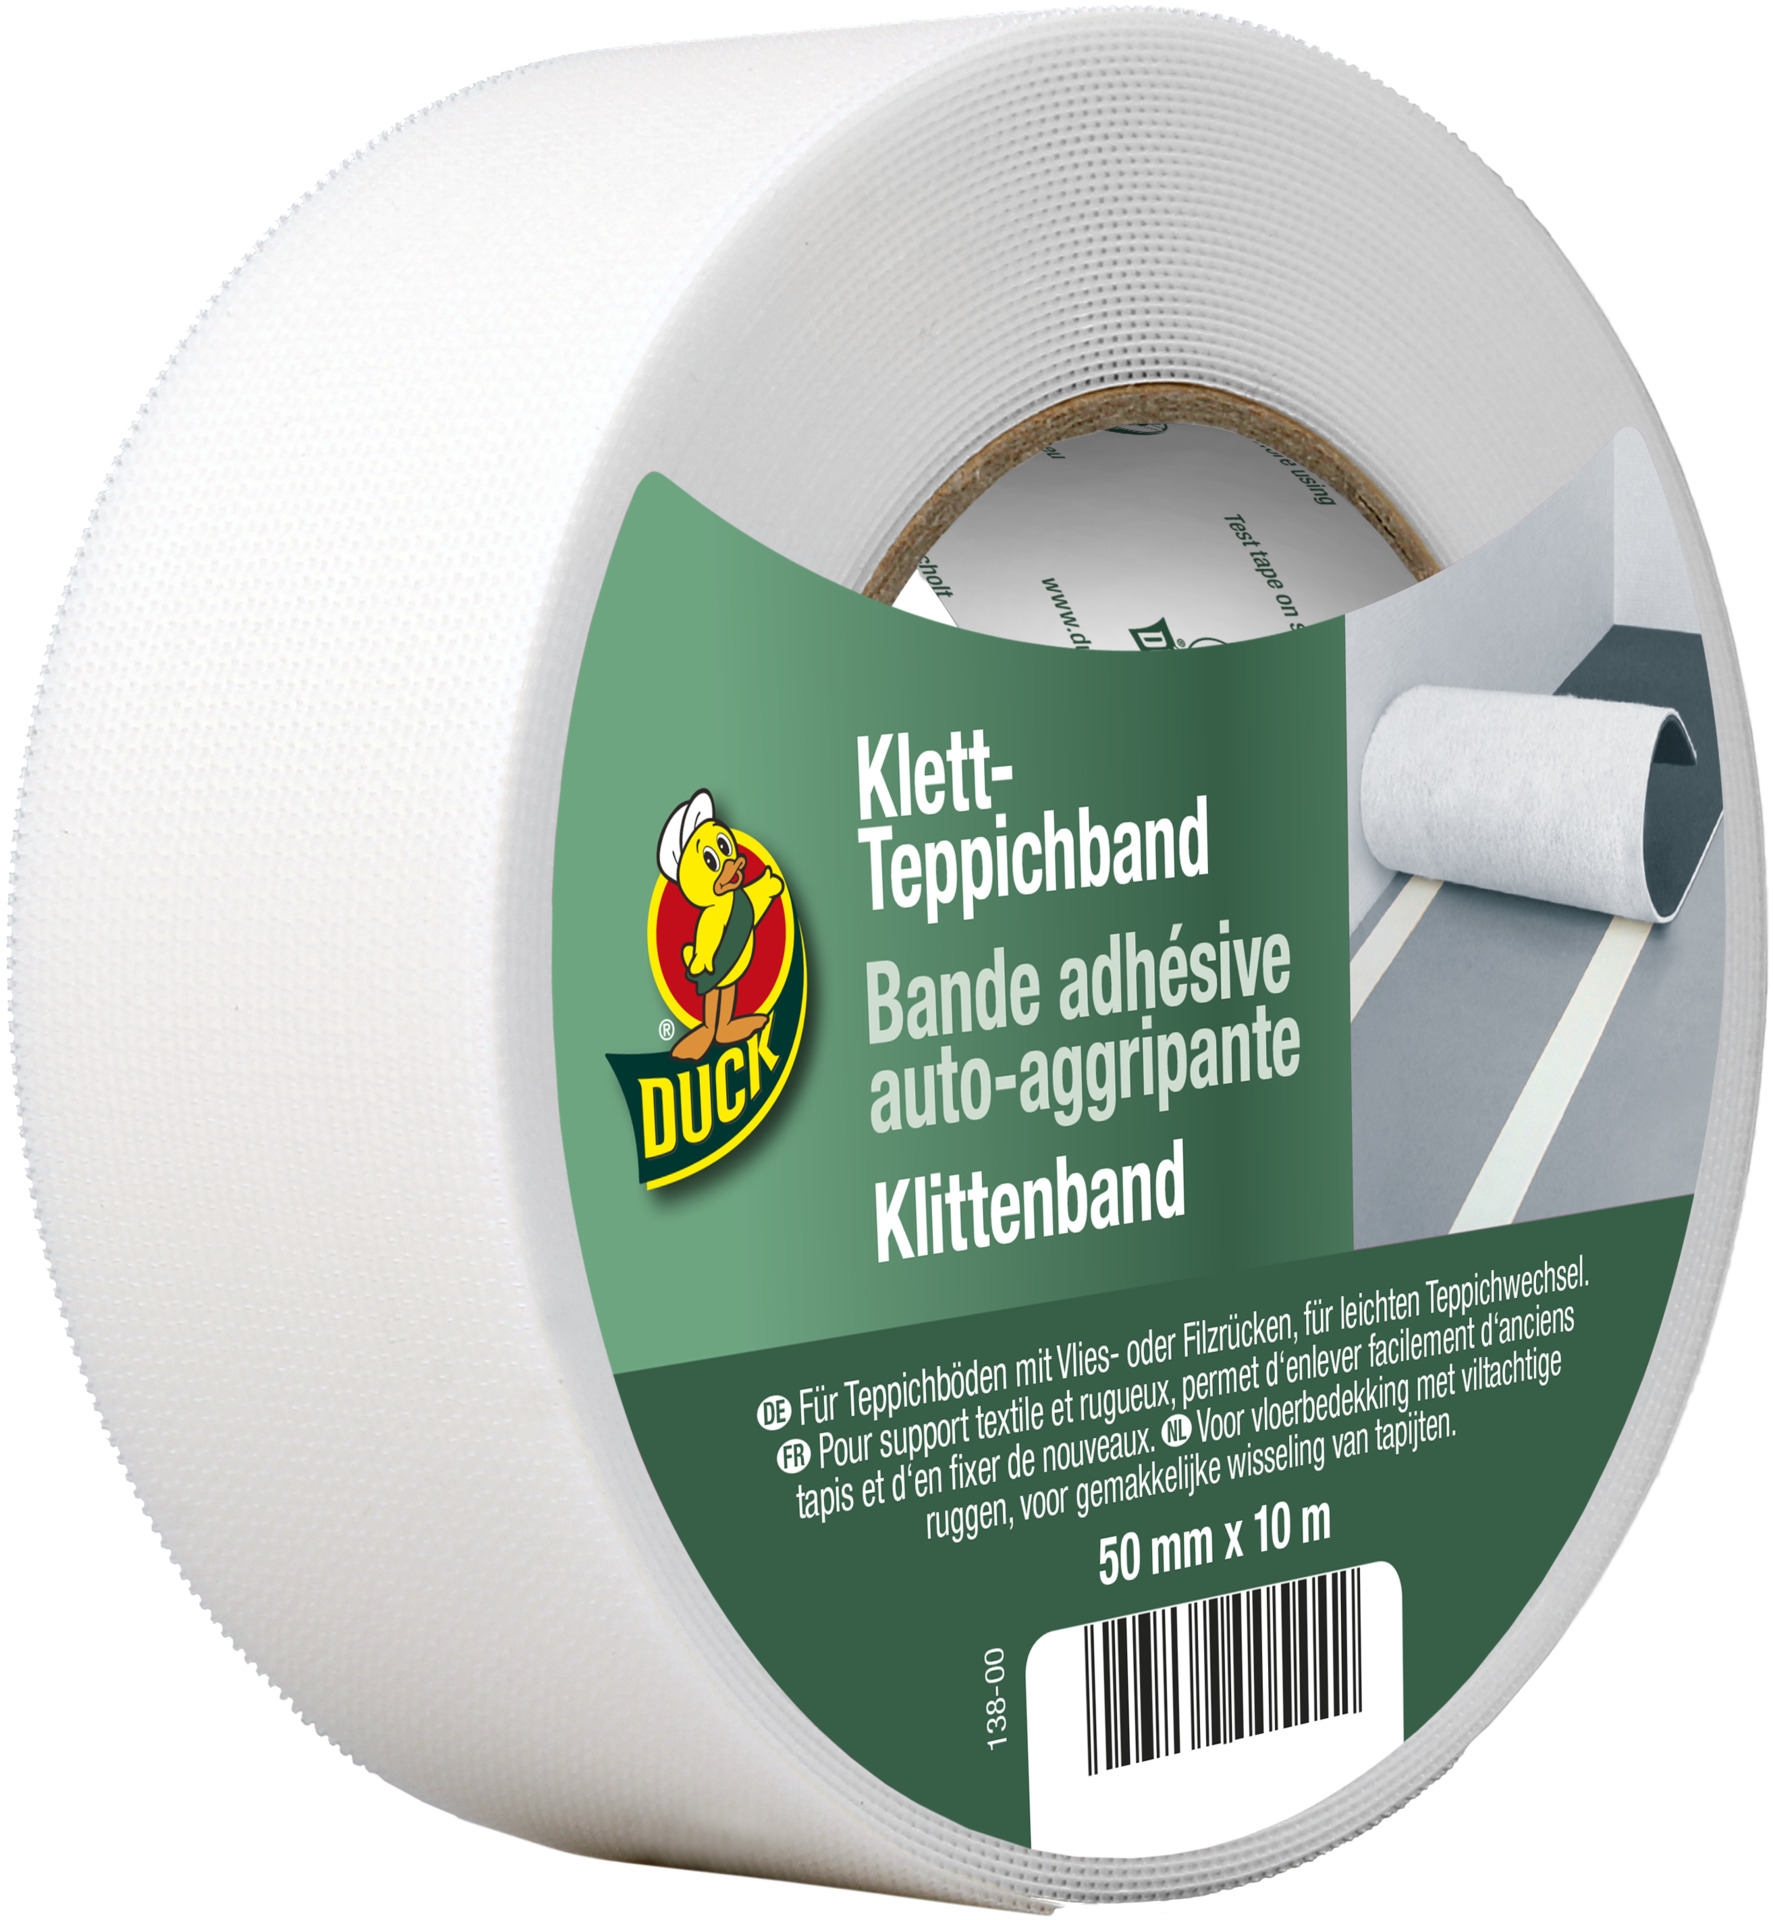 Kip Klett- Teppichband